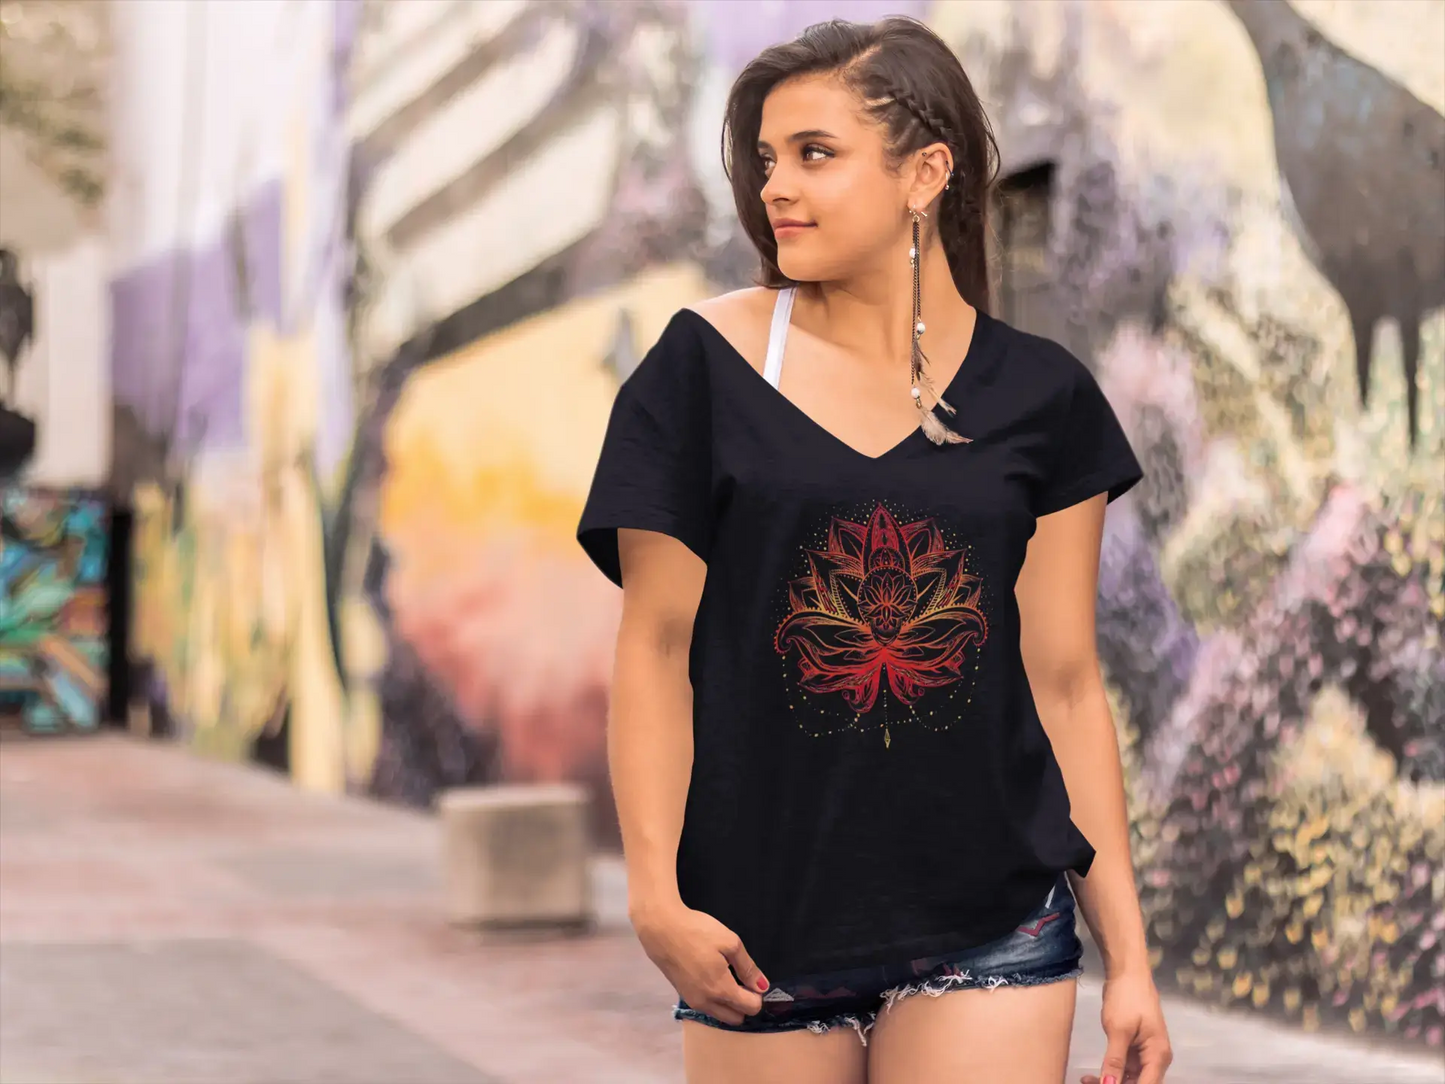 ULTRABASIC Women's V-Neck T-Shirt Lotus Flower Fire - Spiritual Meditation Yoga Gift Tee Shirt